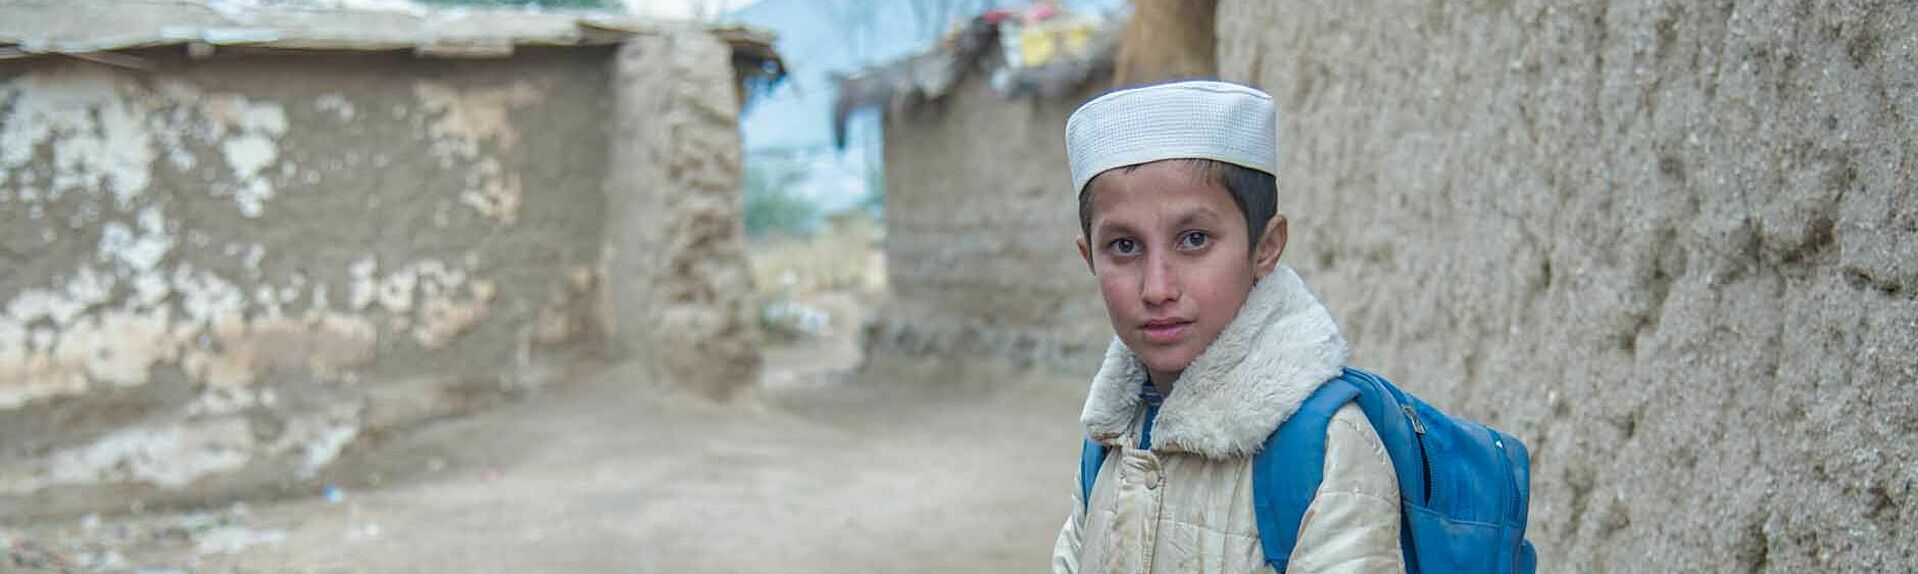 Junge in Pakistan auf dem Weg zur Schule